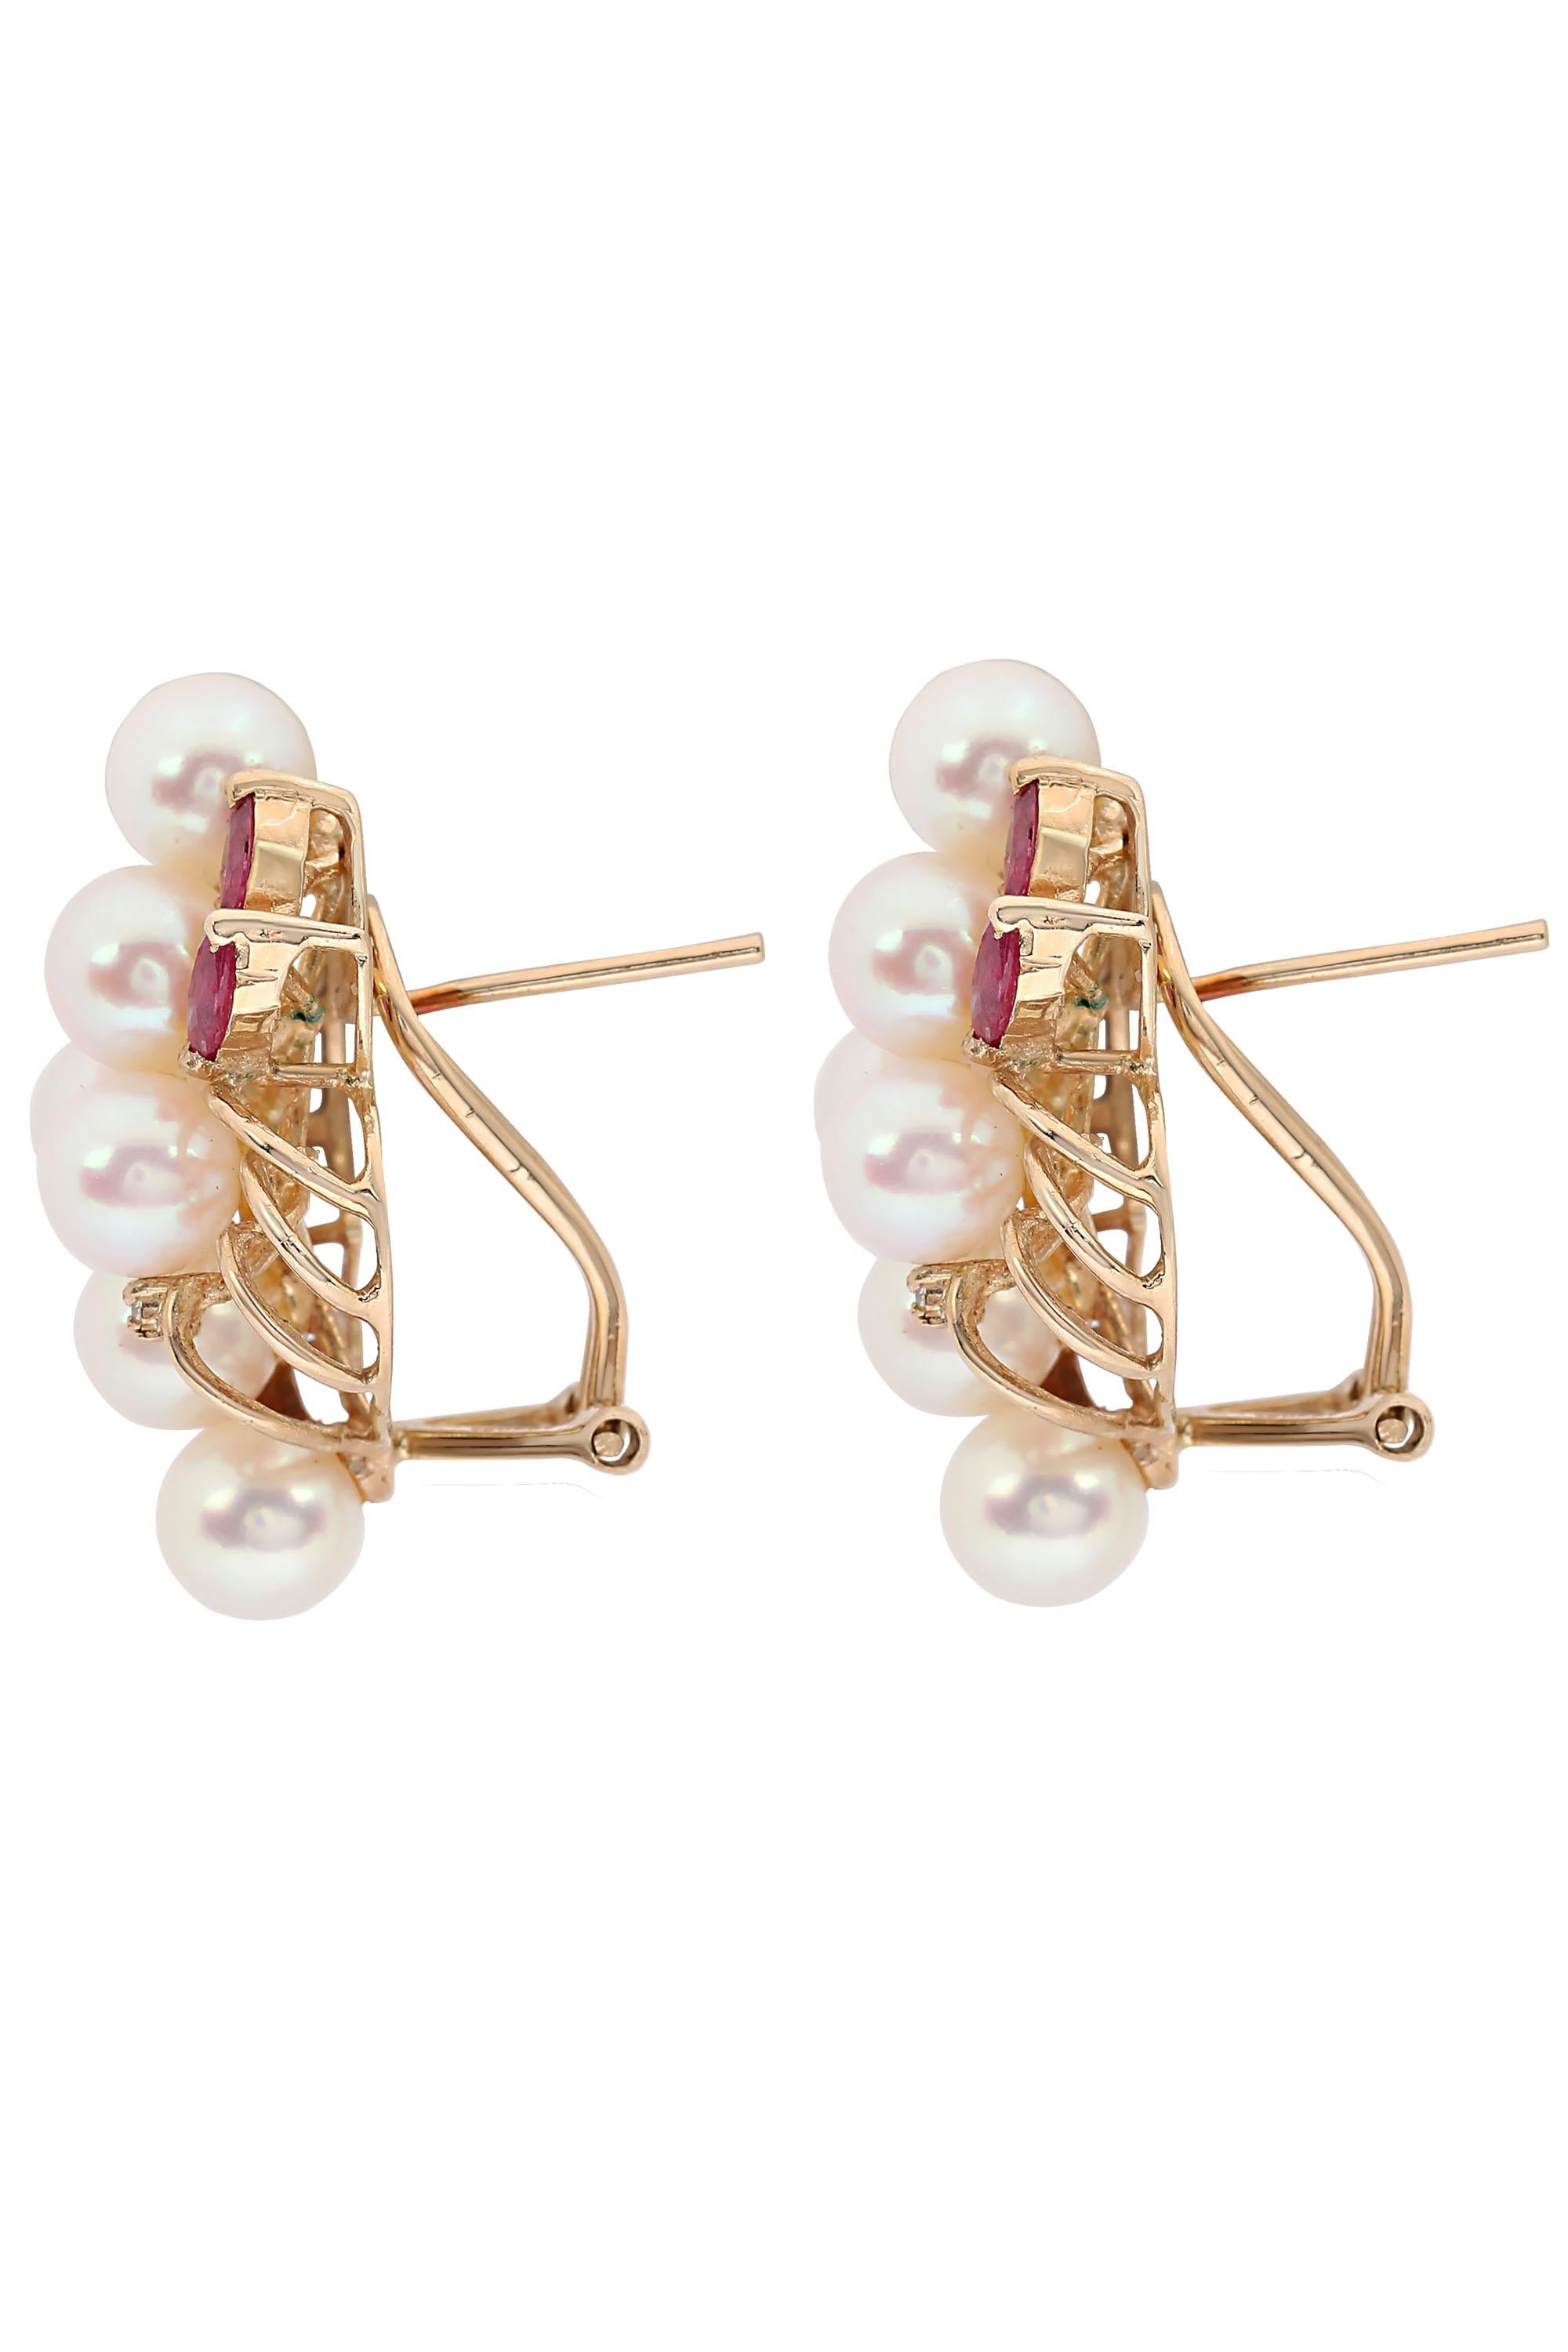 ruby and pearl stud earrings